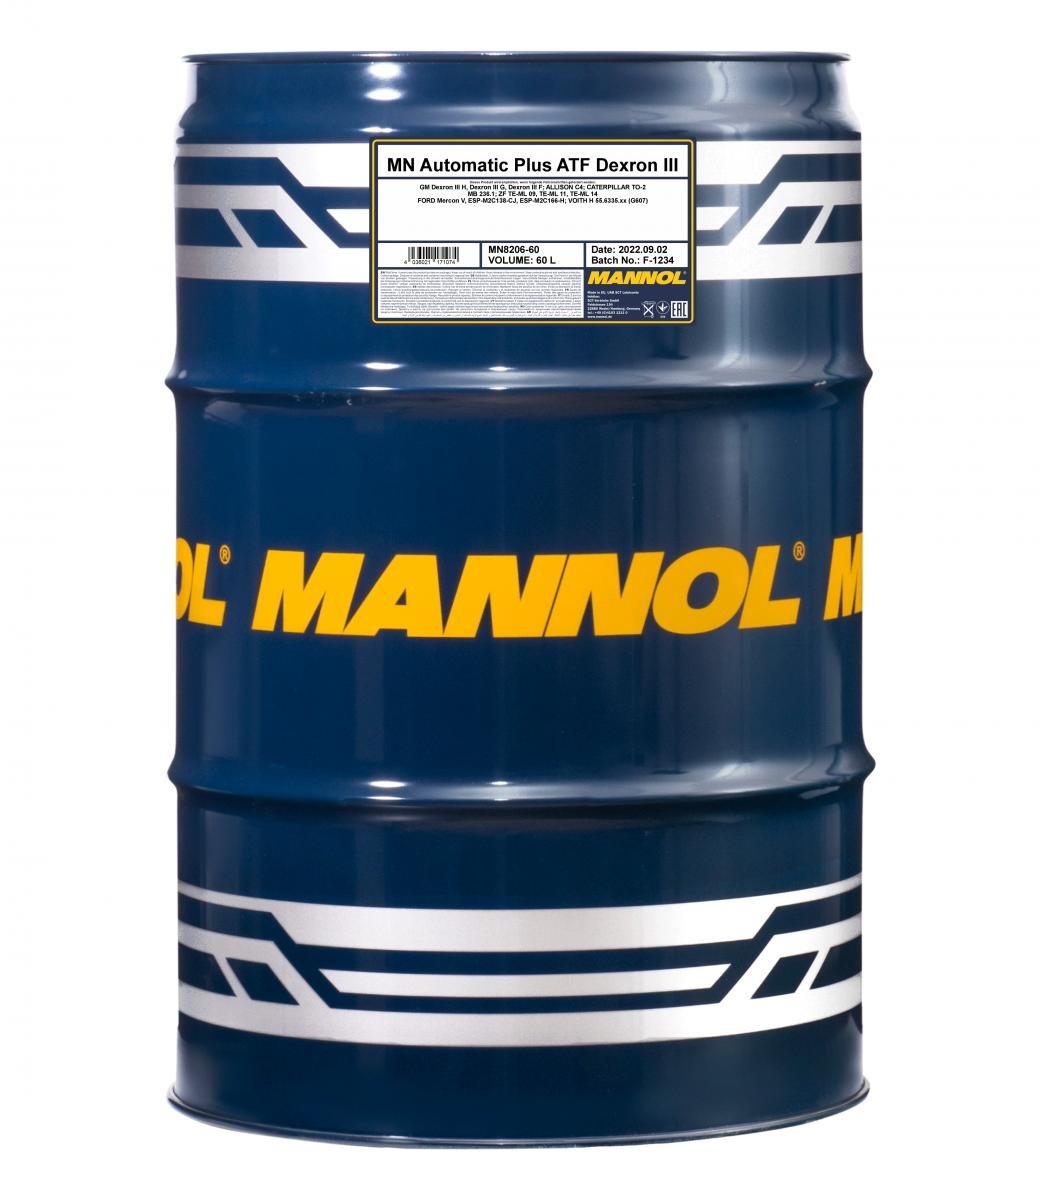 Aceite para transmisión automática MERCEDES-BENZ camion MANNOLMN8206-60 baratos online